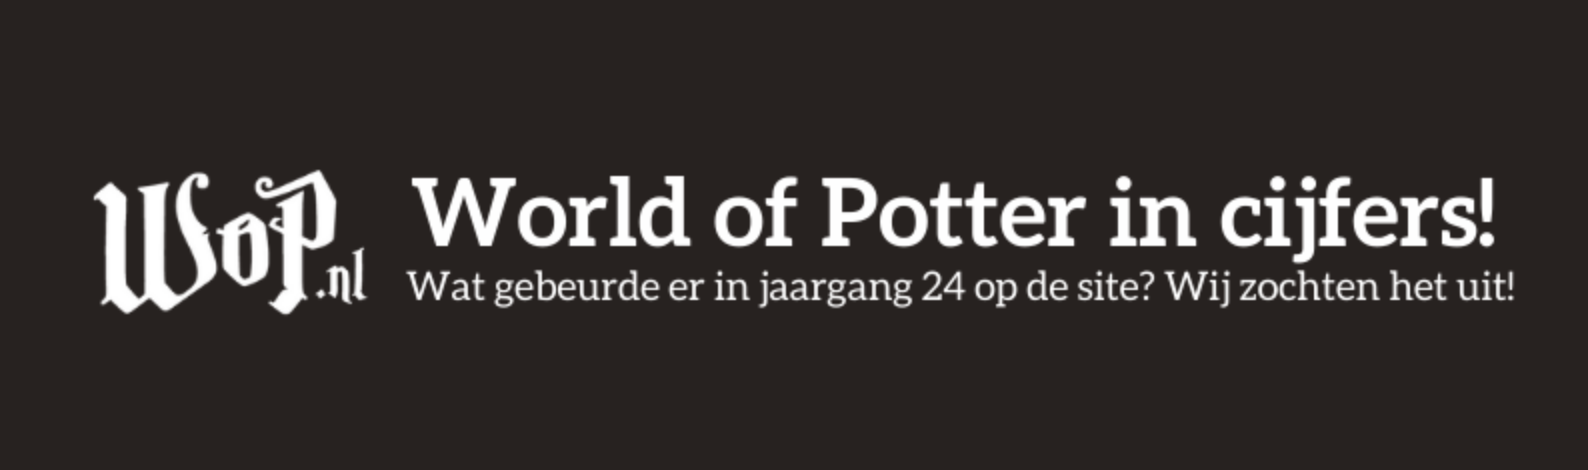 World of Potter in cijfers - Jaargang 24